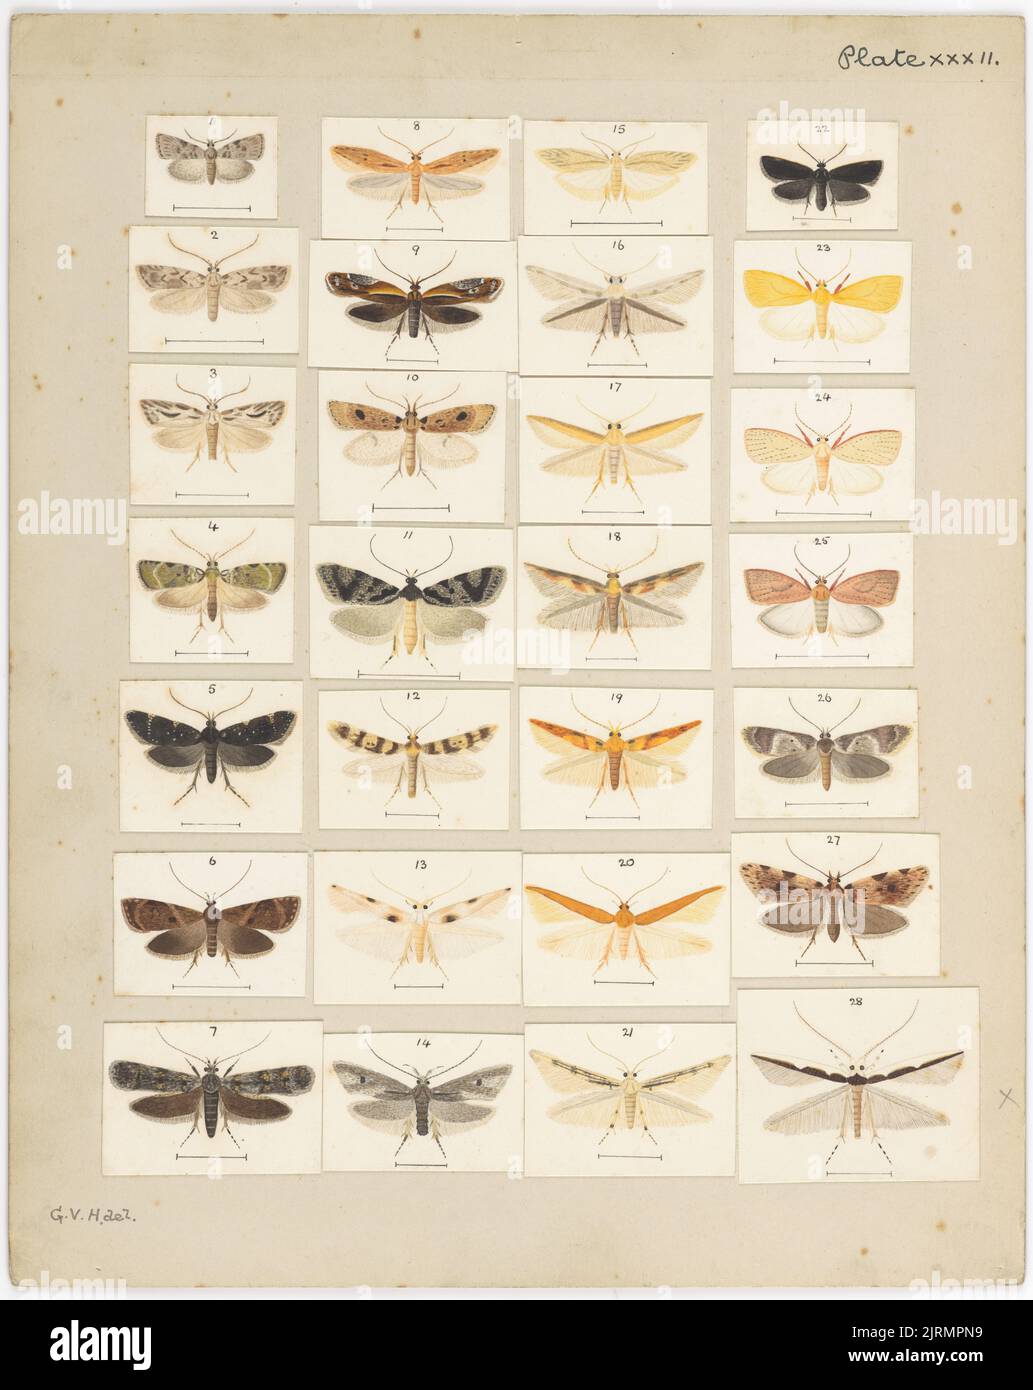 Platte XXXII. Die Schmetterlinge und Motten Neuseelands., um 1927, von George Hudson. Stockfoto